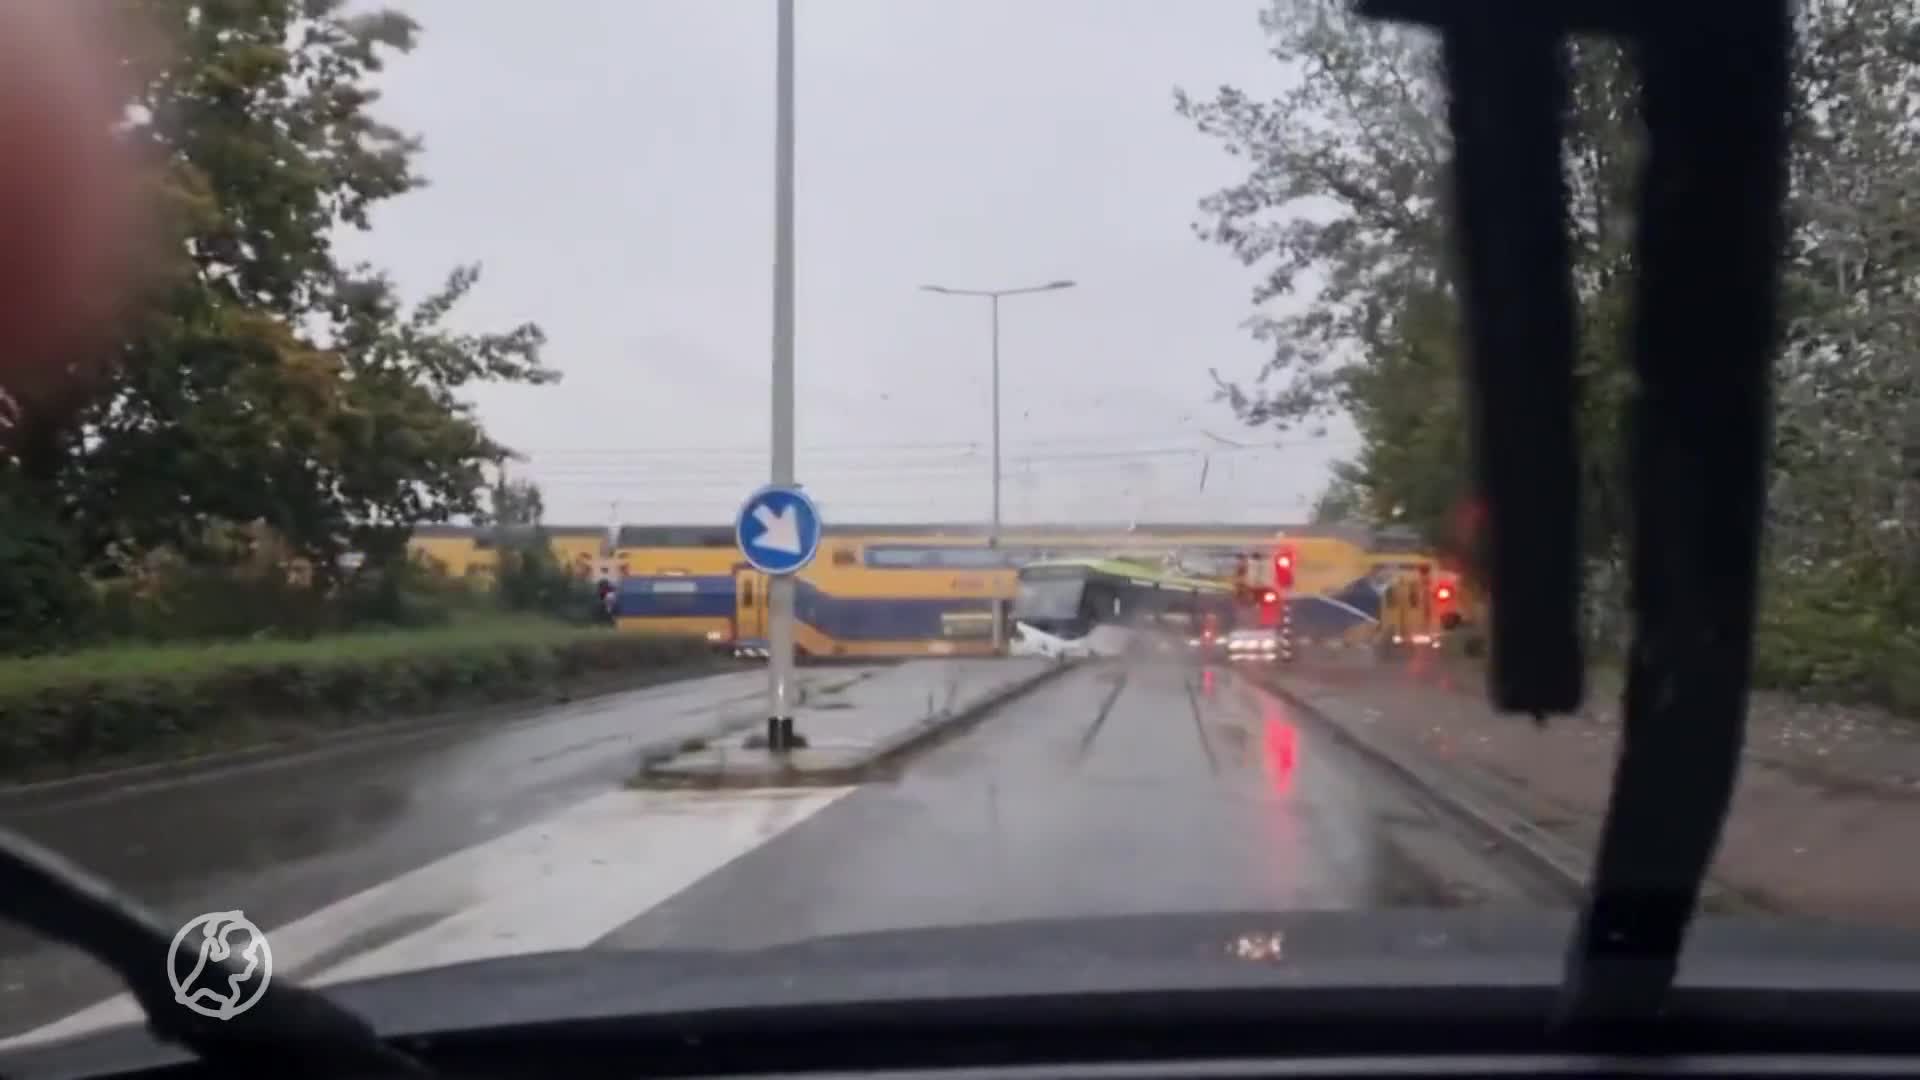 ZIEN: Trein ramt bus op overweg, chauffeur probeert machinist nog te waarschuwen